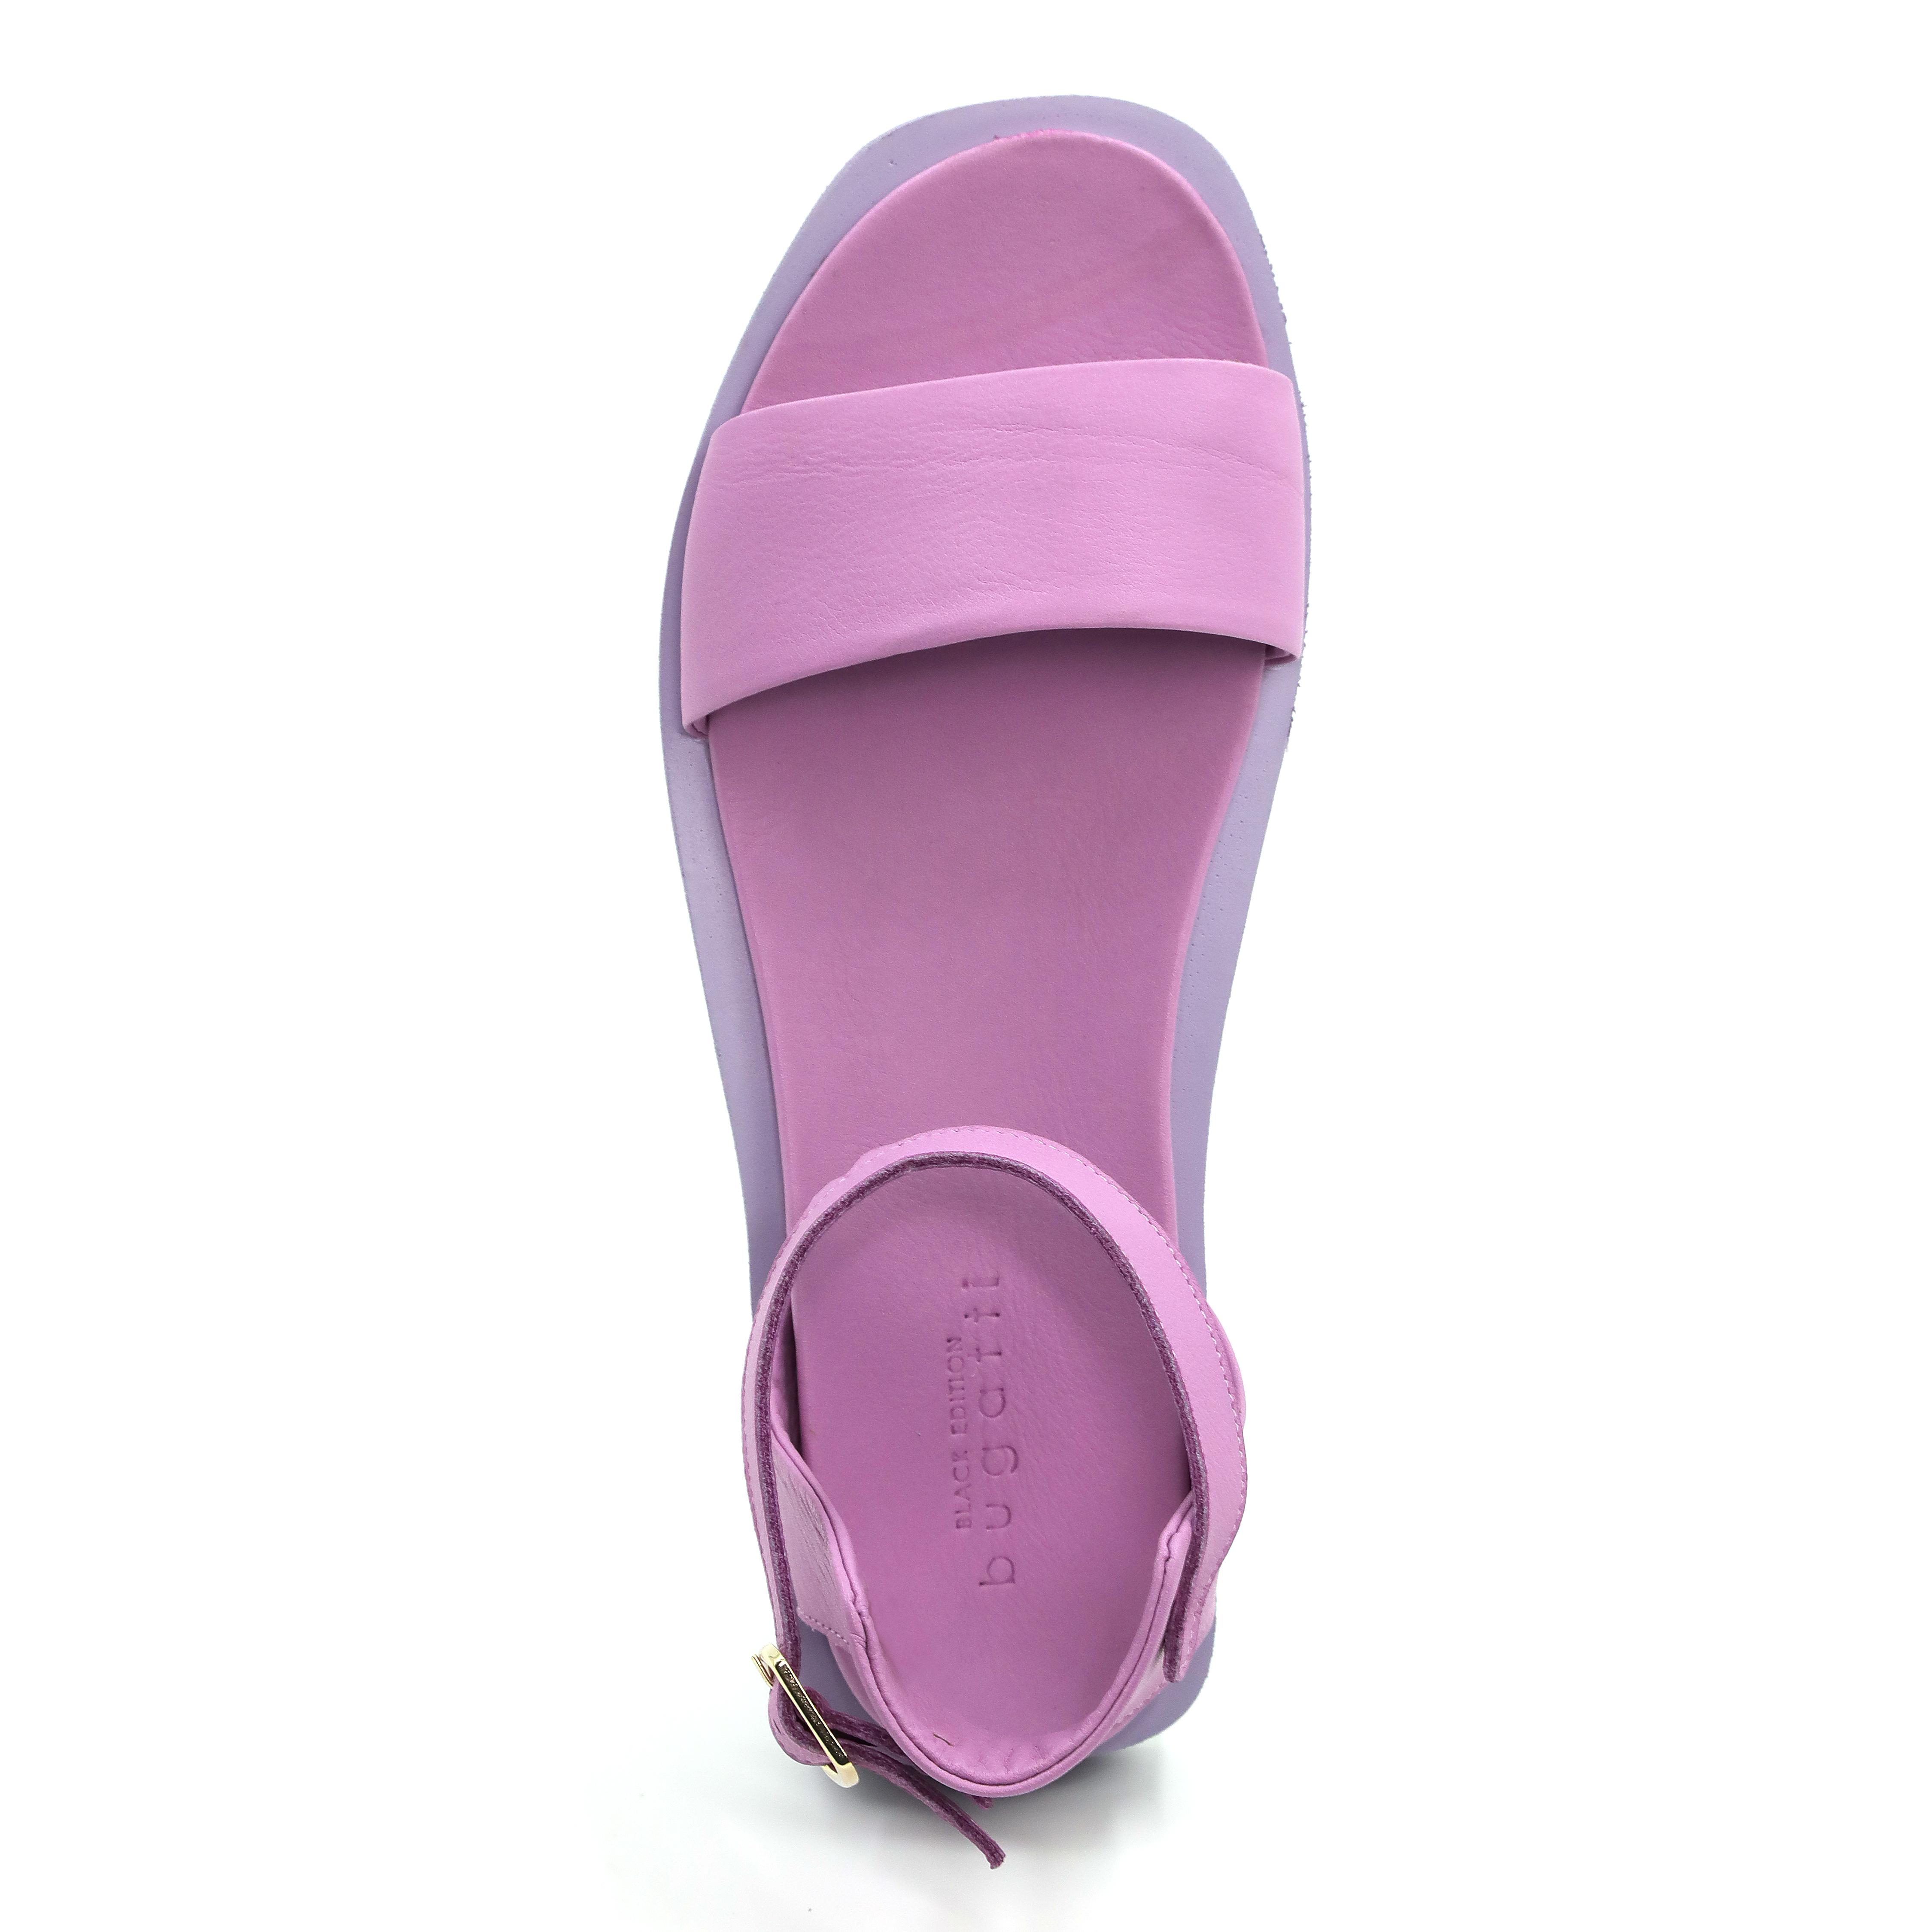 Женские сандалии Bugatti, фиолетовые, цвет фиолетовый, размер 39 - фото 4